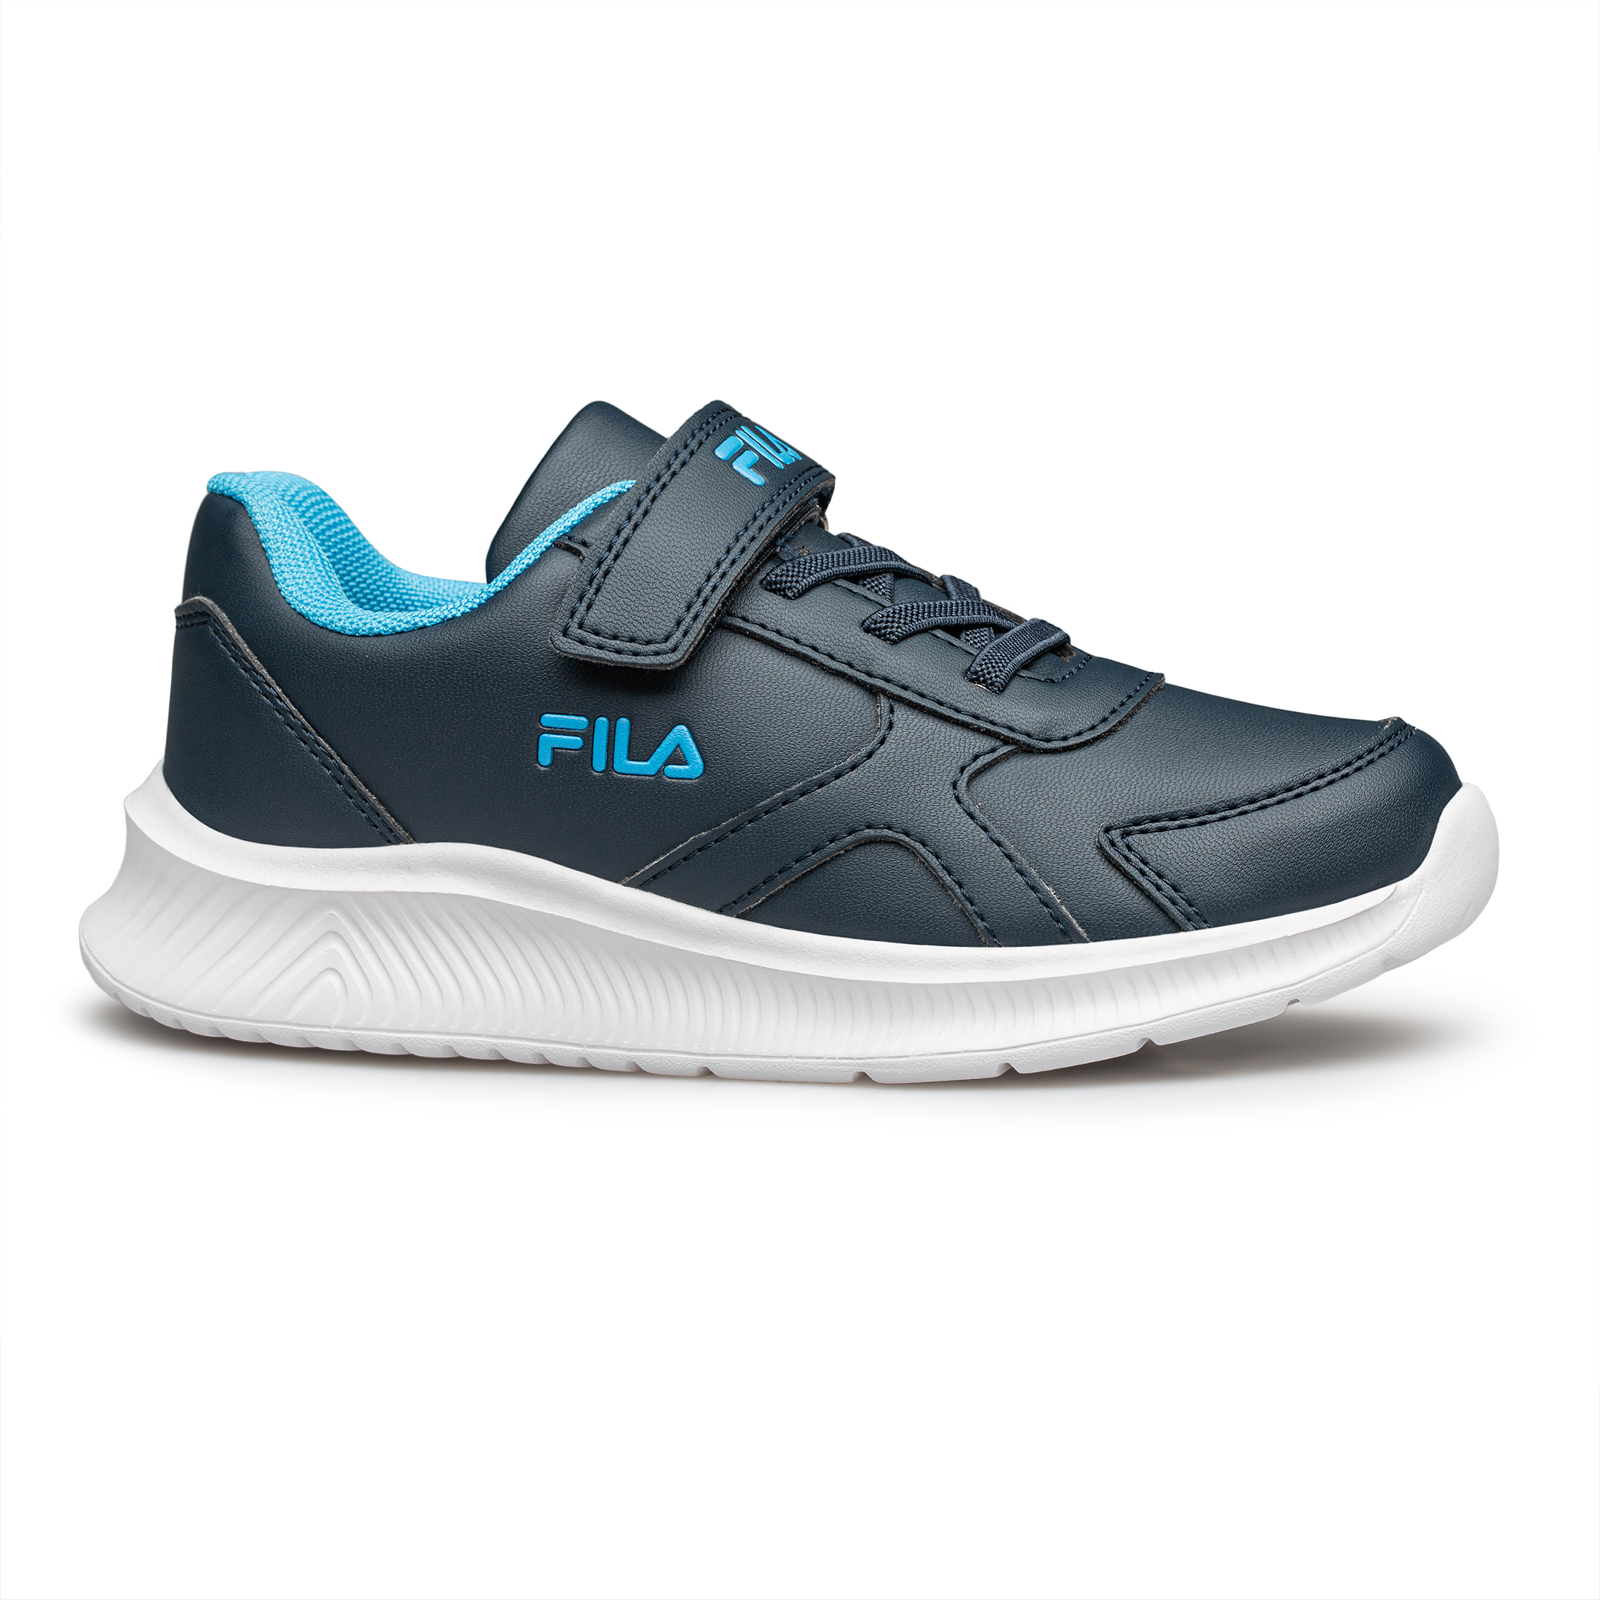 Fila - BRETT 4 V FOOTWEAR - DARK BLUE LIGHT BLUE